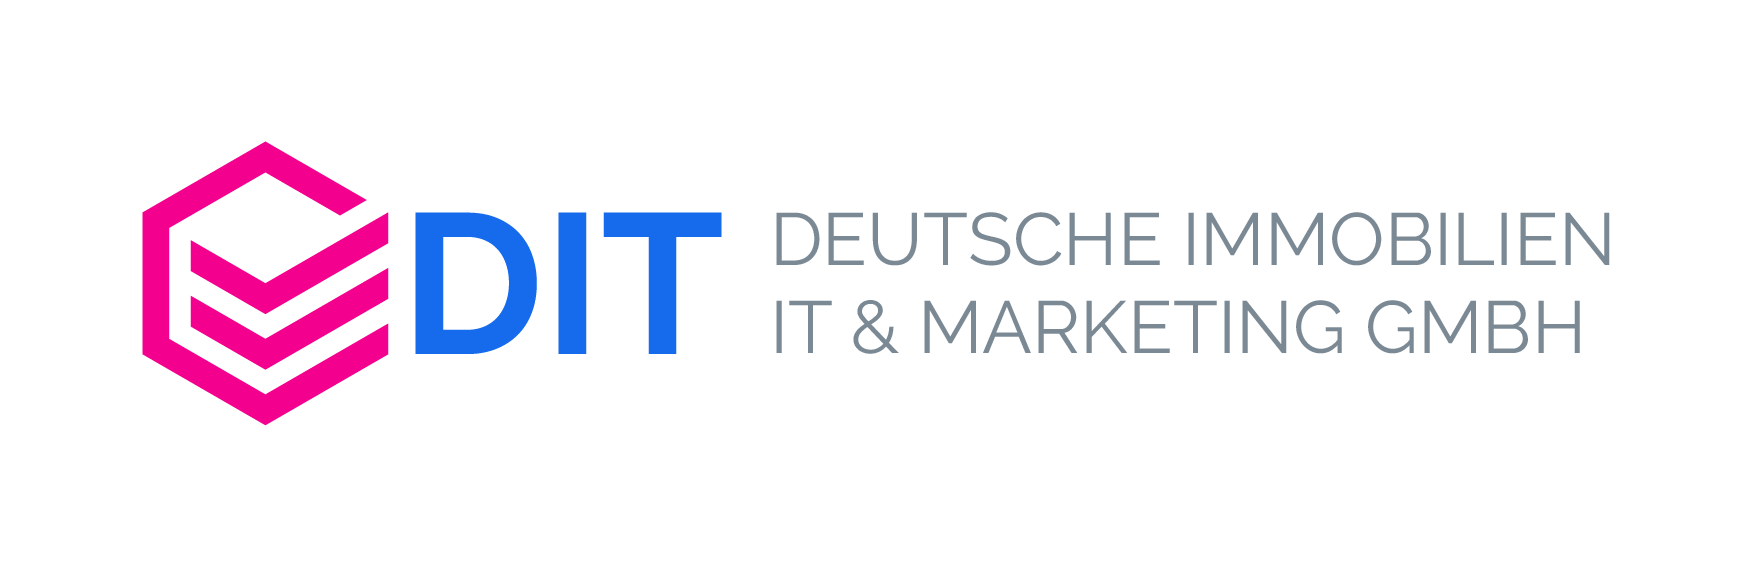 Logo der Deutsche Immobilien IT & Marketing GmbH